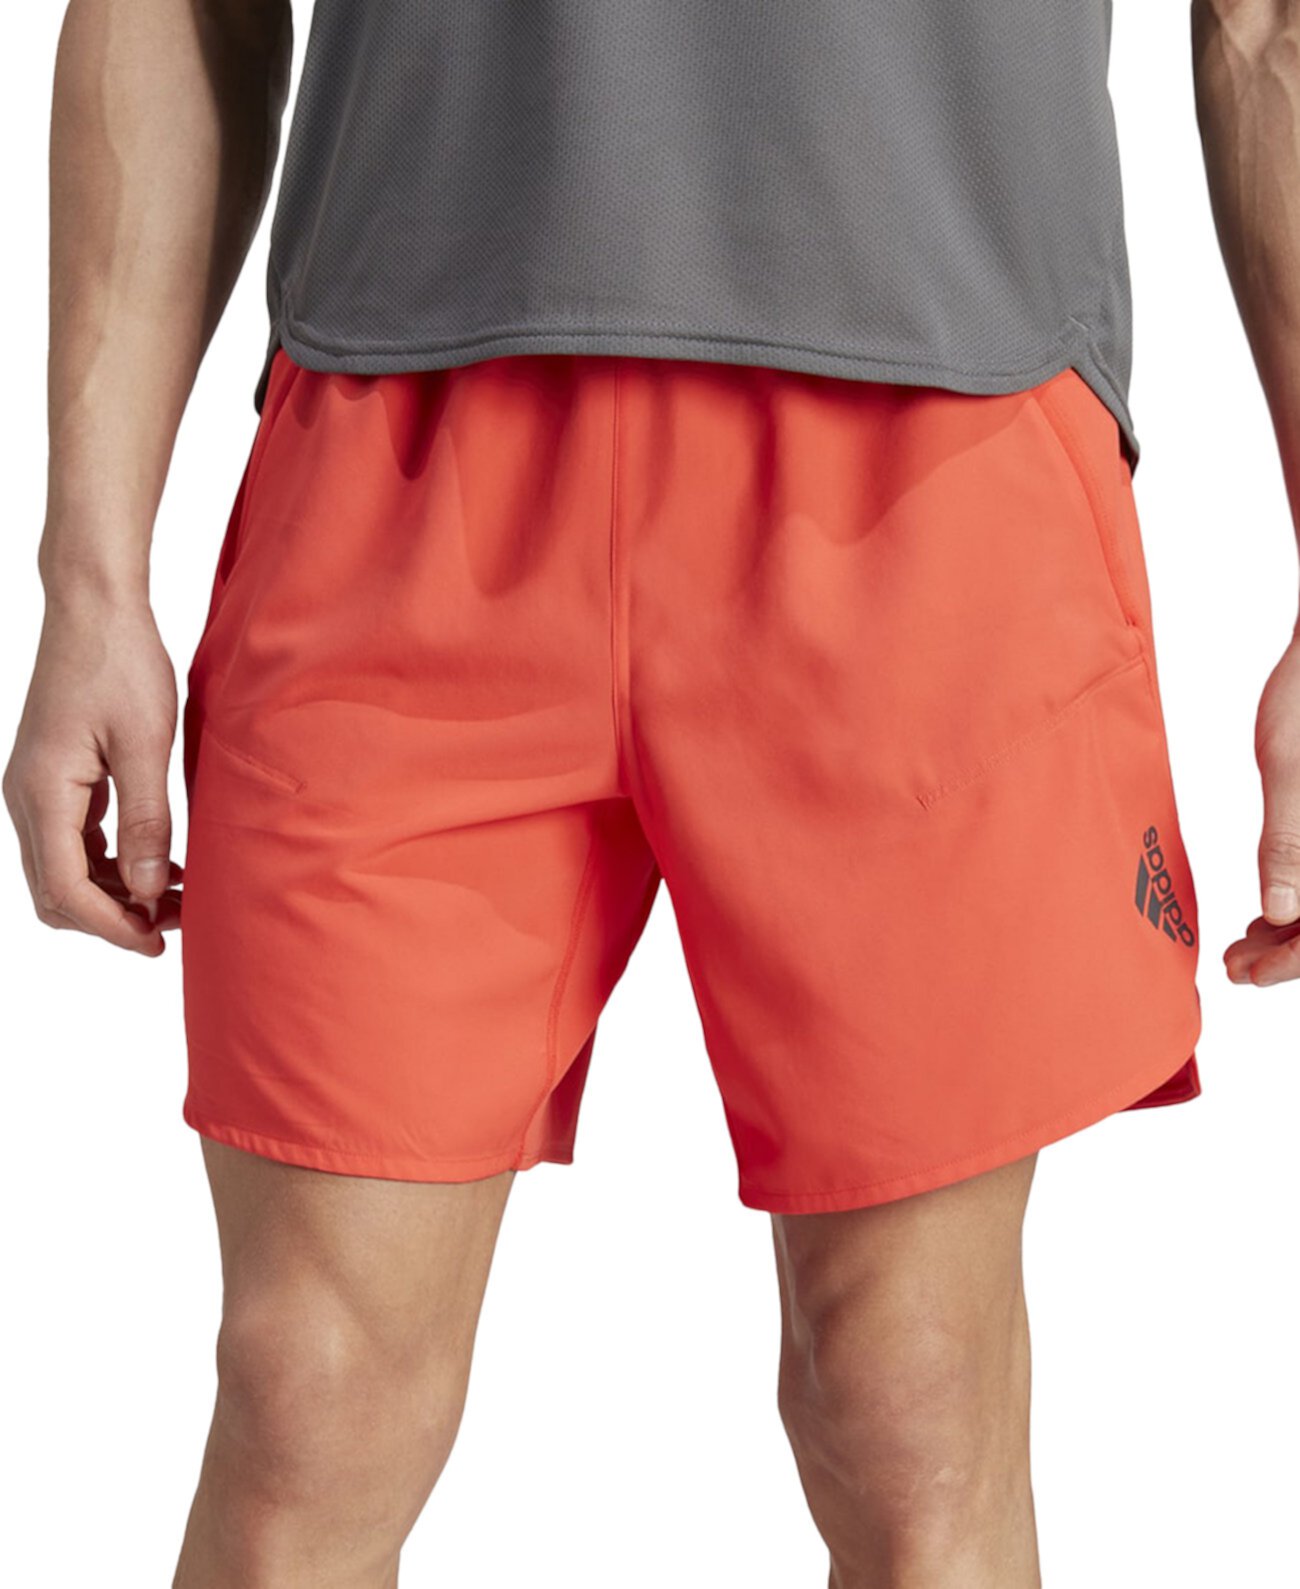 Мужские тренировочные шорты со светоотражающим знаком 7 дюймов Adidas